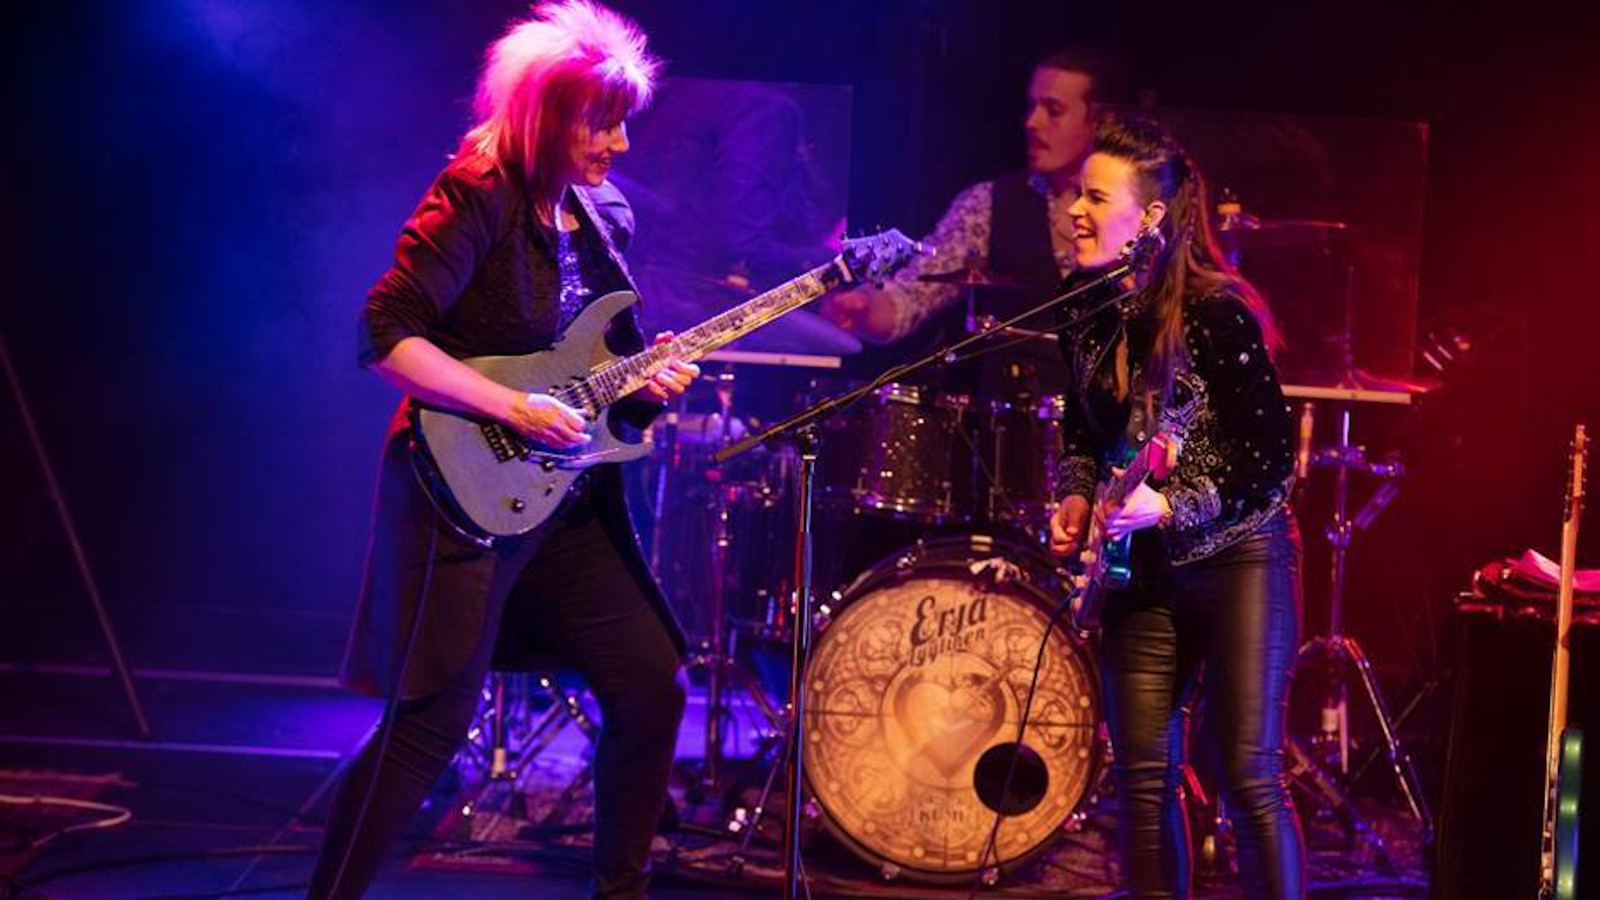 Kuvassa ovat esiintymislavalla Jennifer Batten ja Erja Lyytinen kitaroineen nahka-asuissa.  Tausta on on valaistu sinisellä ja punertavalla.